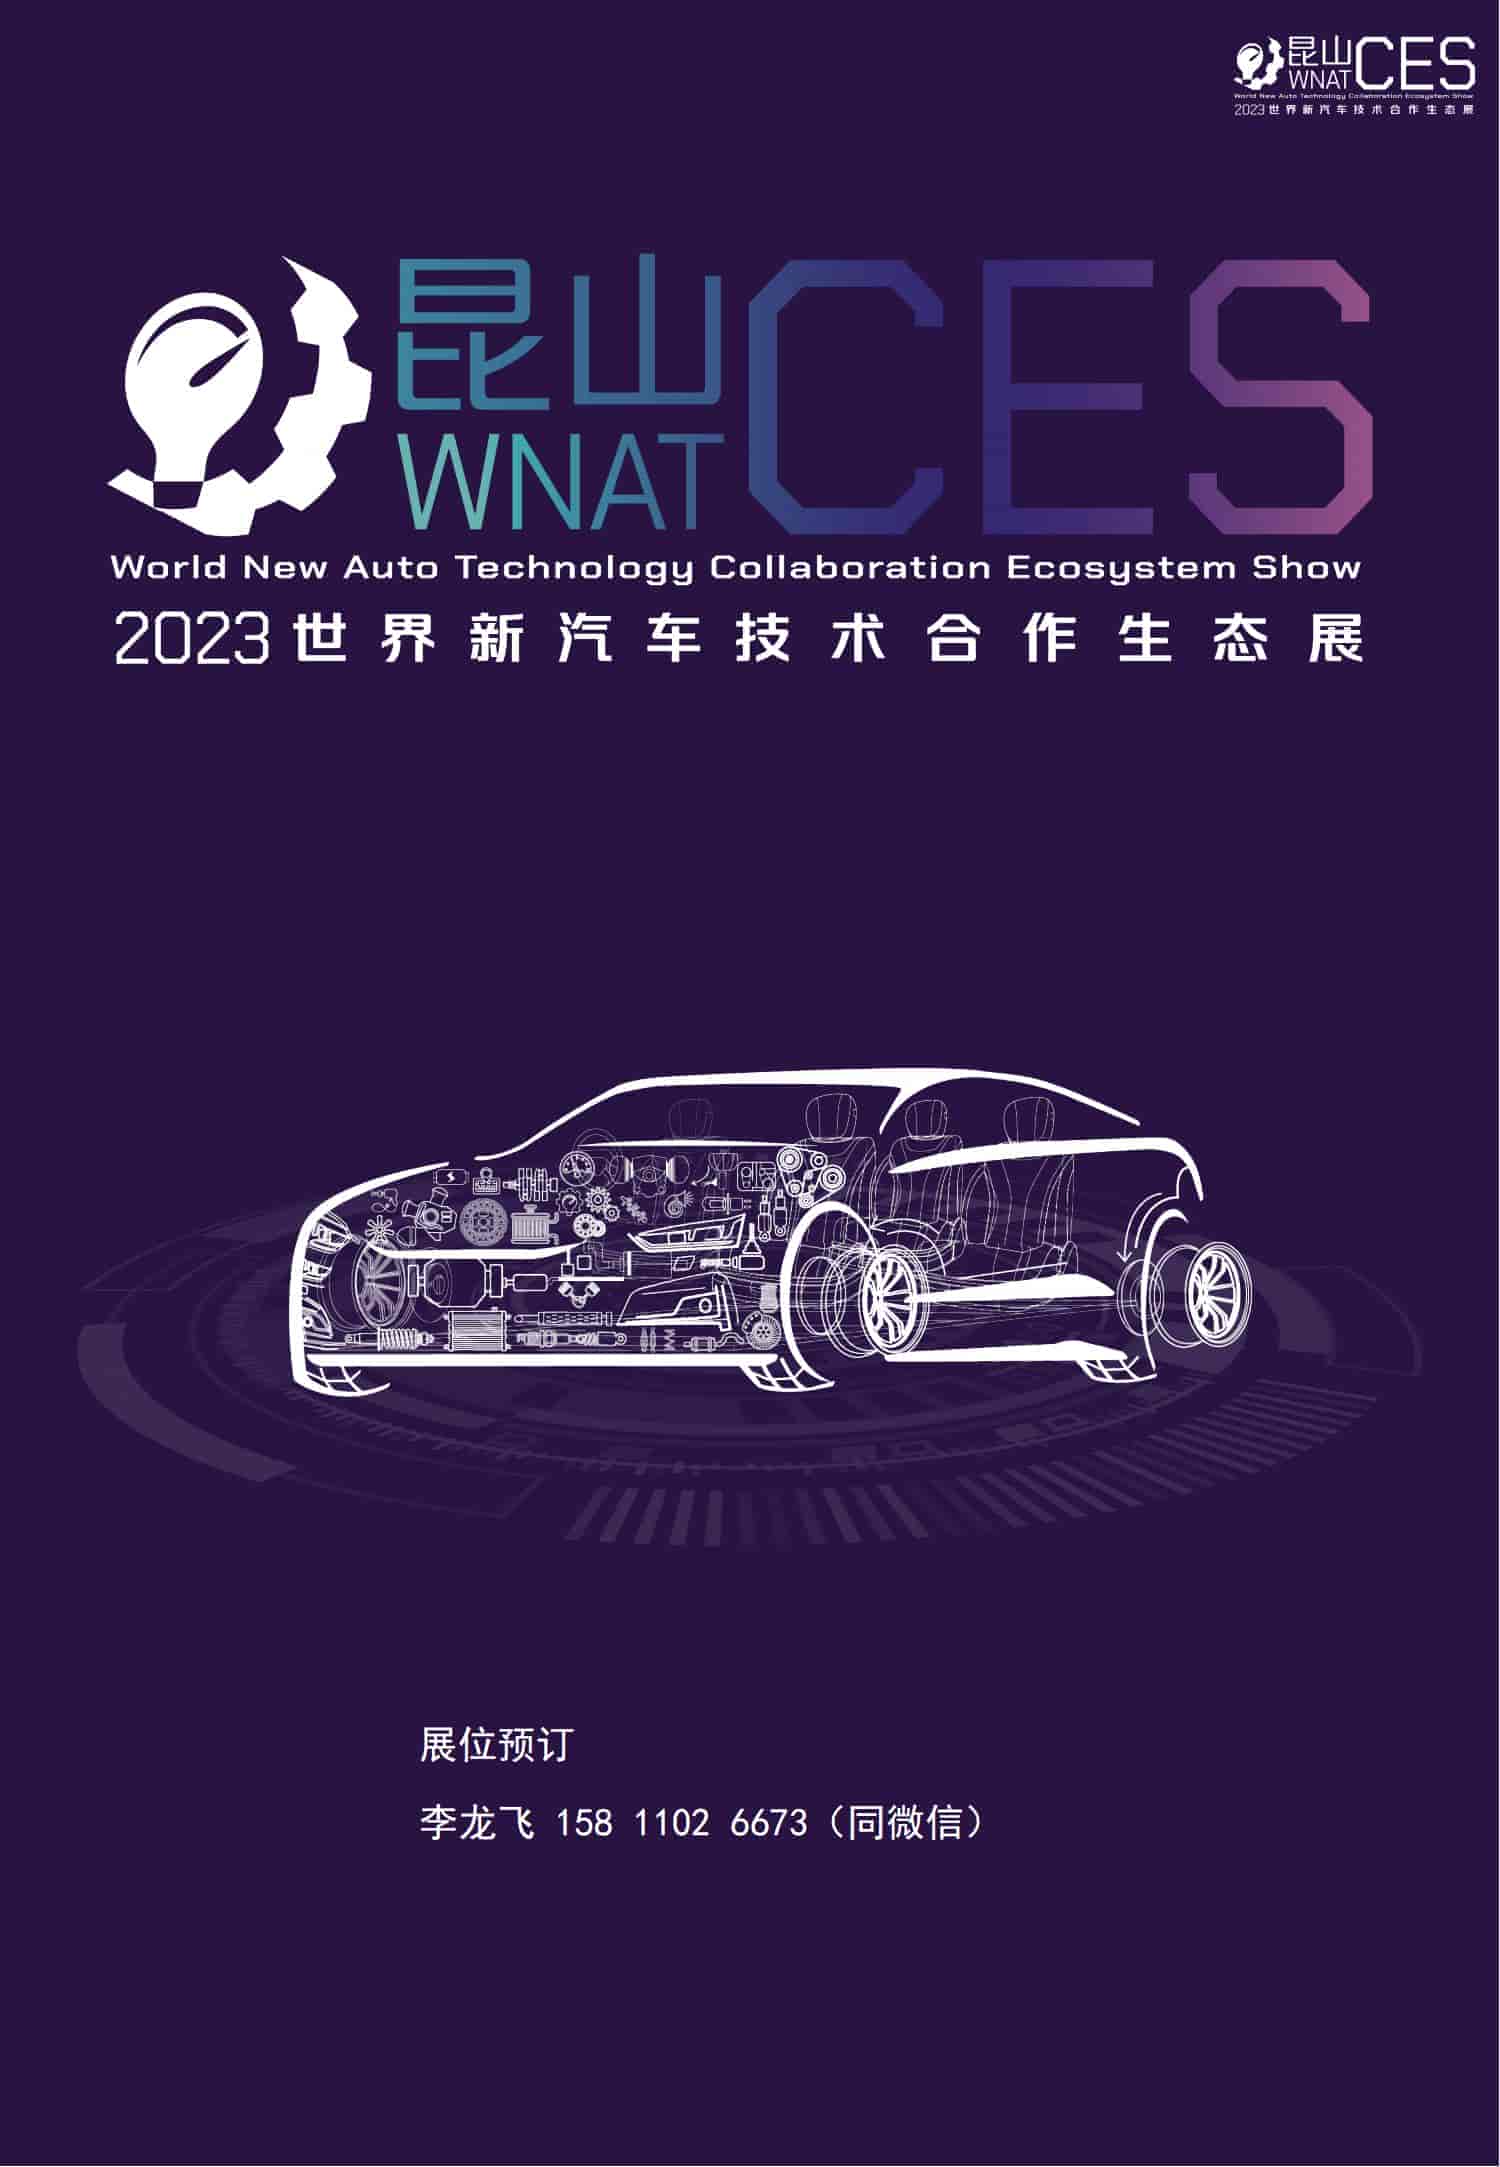 招商手册-2023世界新汽车技术合作生态展_10.jpg